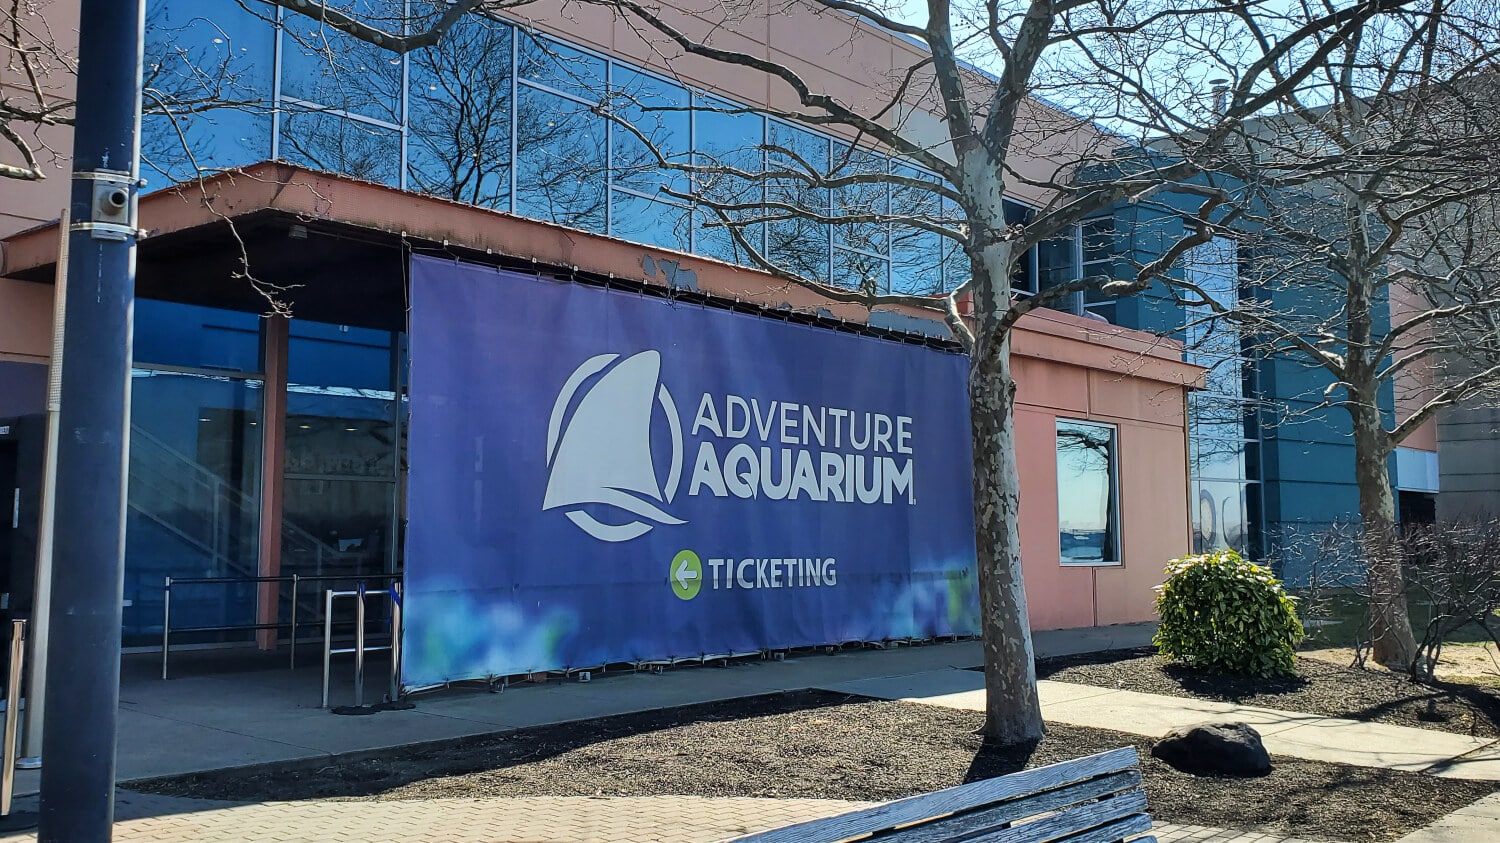 Adventure Aquarium in New Jersey - ADventure Aquarium In New Jersey 9 1